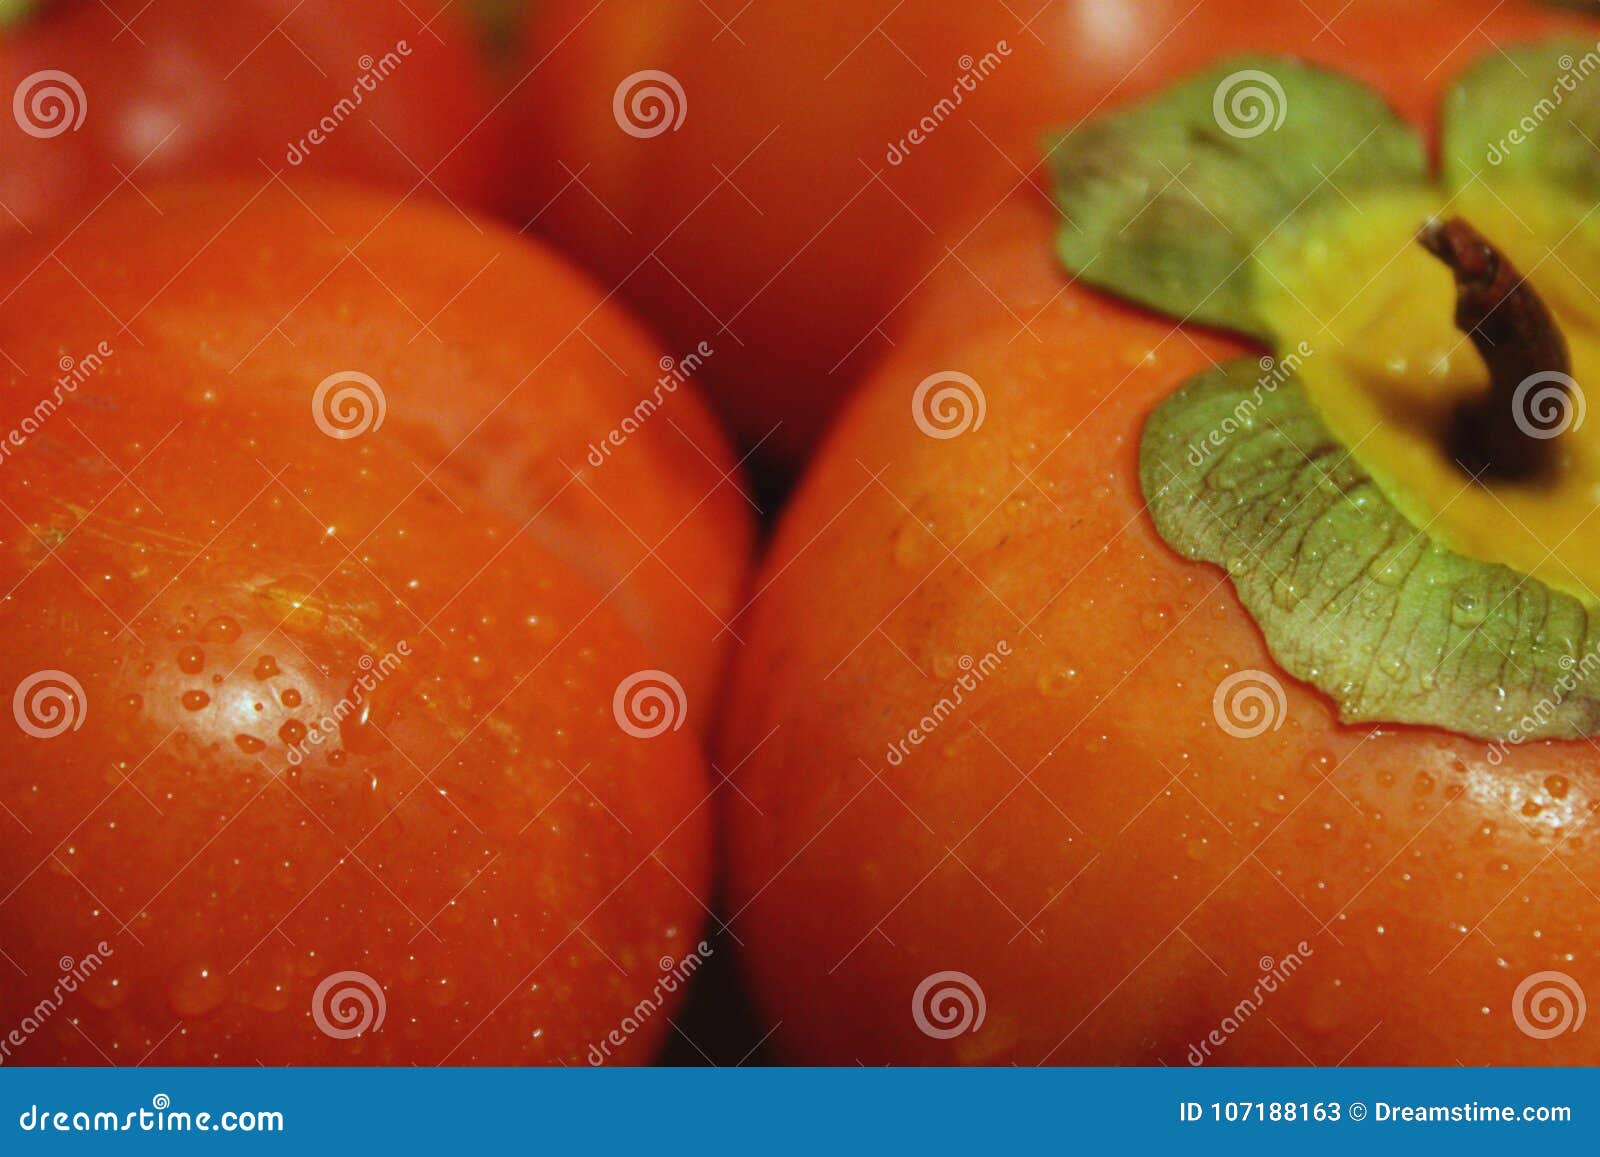 Апельсин, яркий восточный плодоовощ хурмы в капельках воды с leves Макрос. Восточный плодоовощ хурмы в капельках воды предпосылка Плодоовощ deautiful, яркий оранжевый цвет Макрос